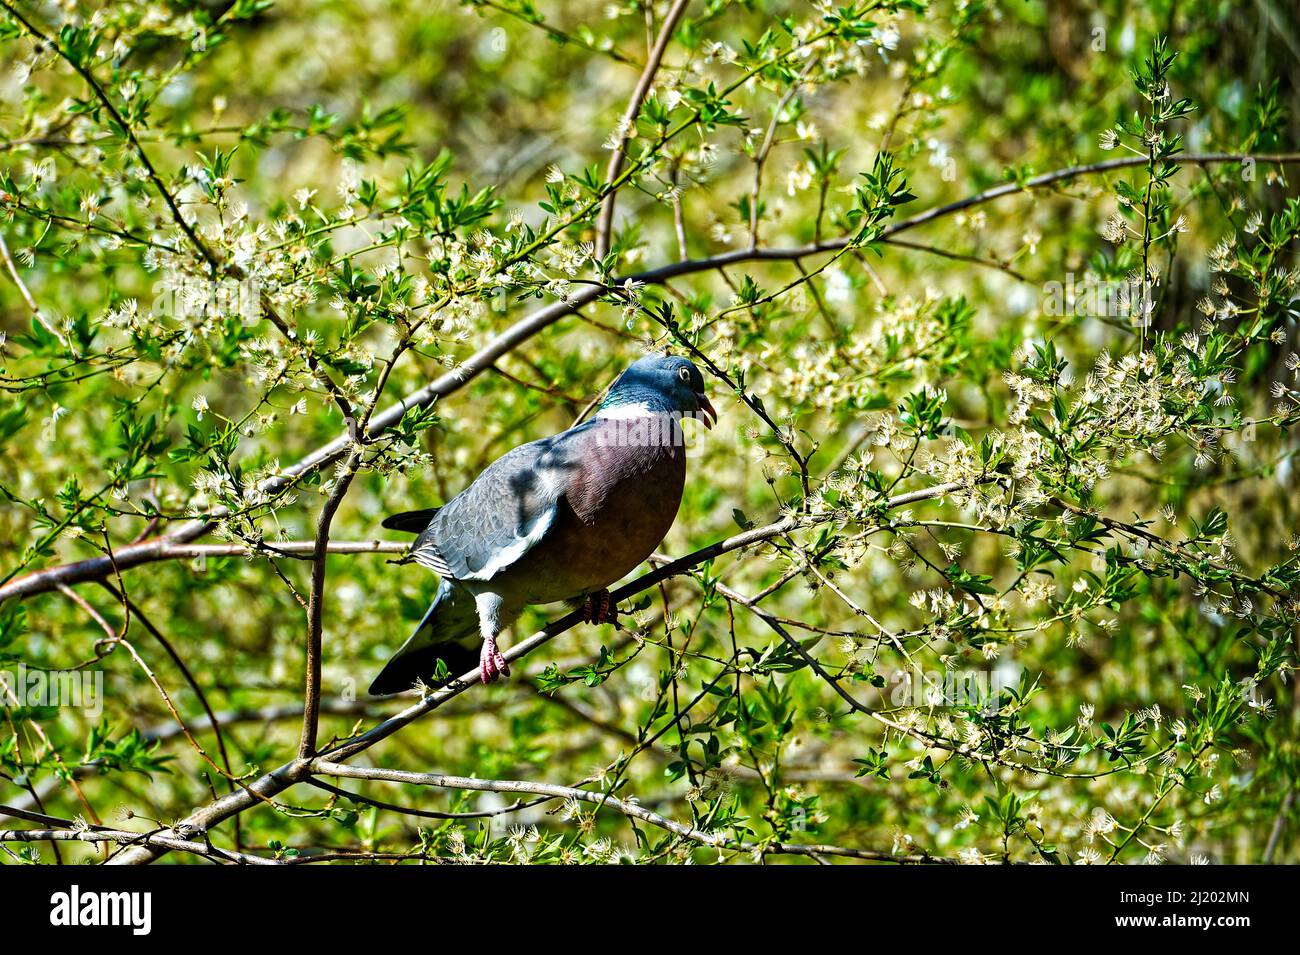 Tauben – ganz besondere Vögel in Garten. Stock Photo